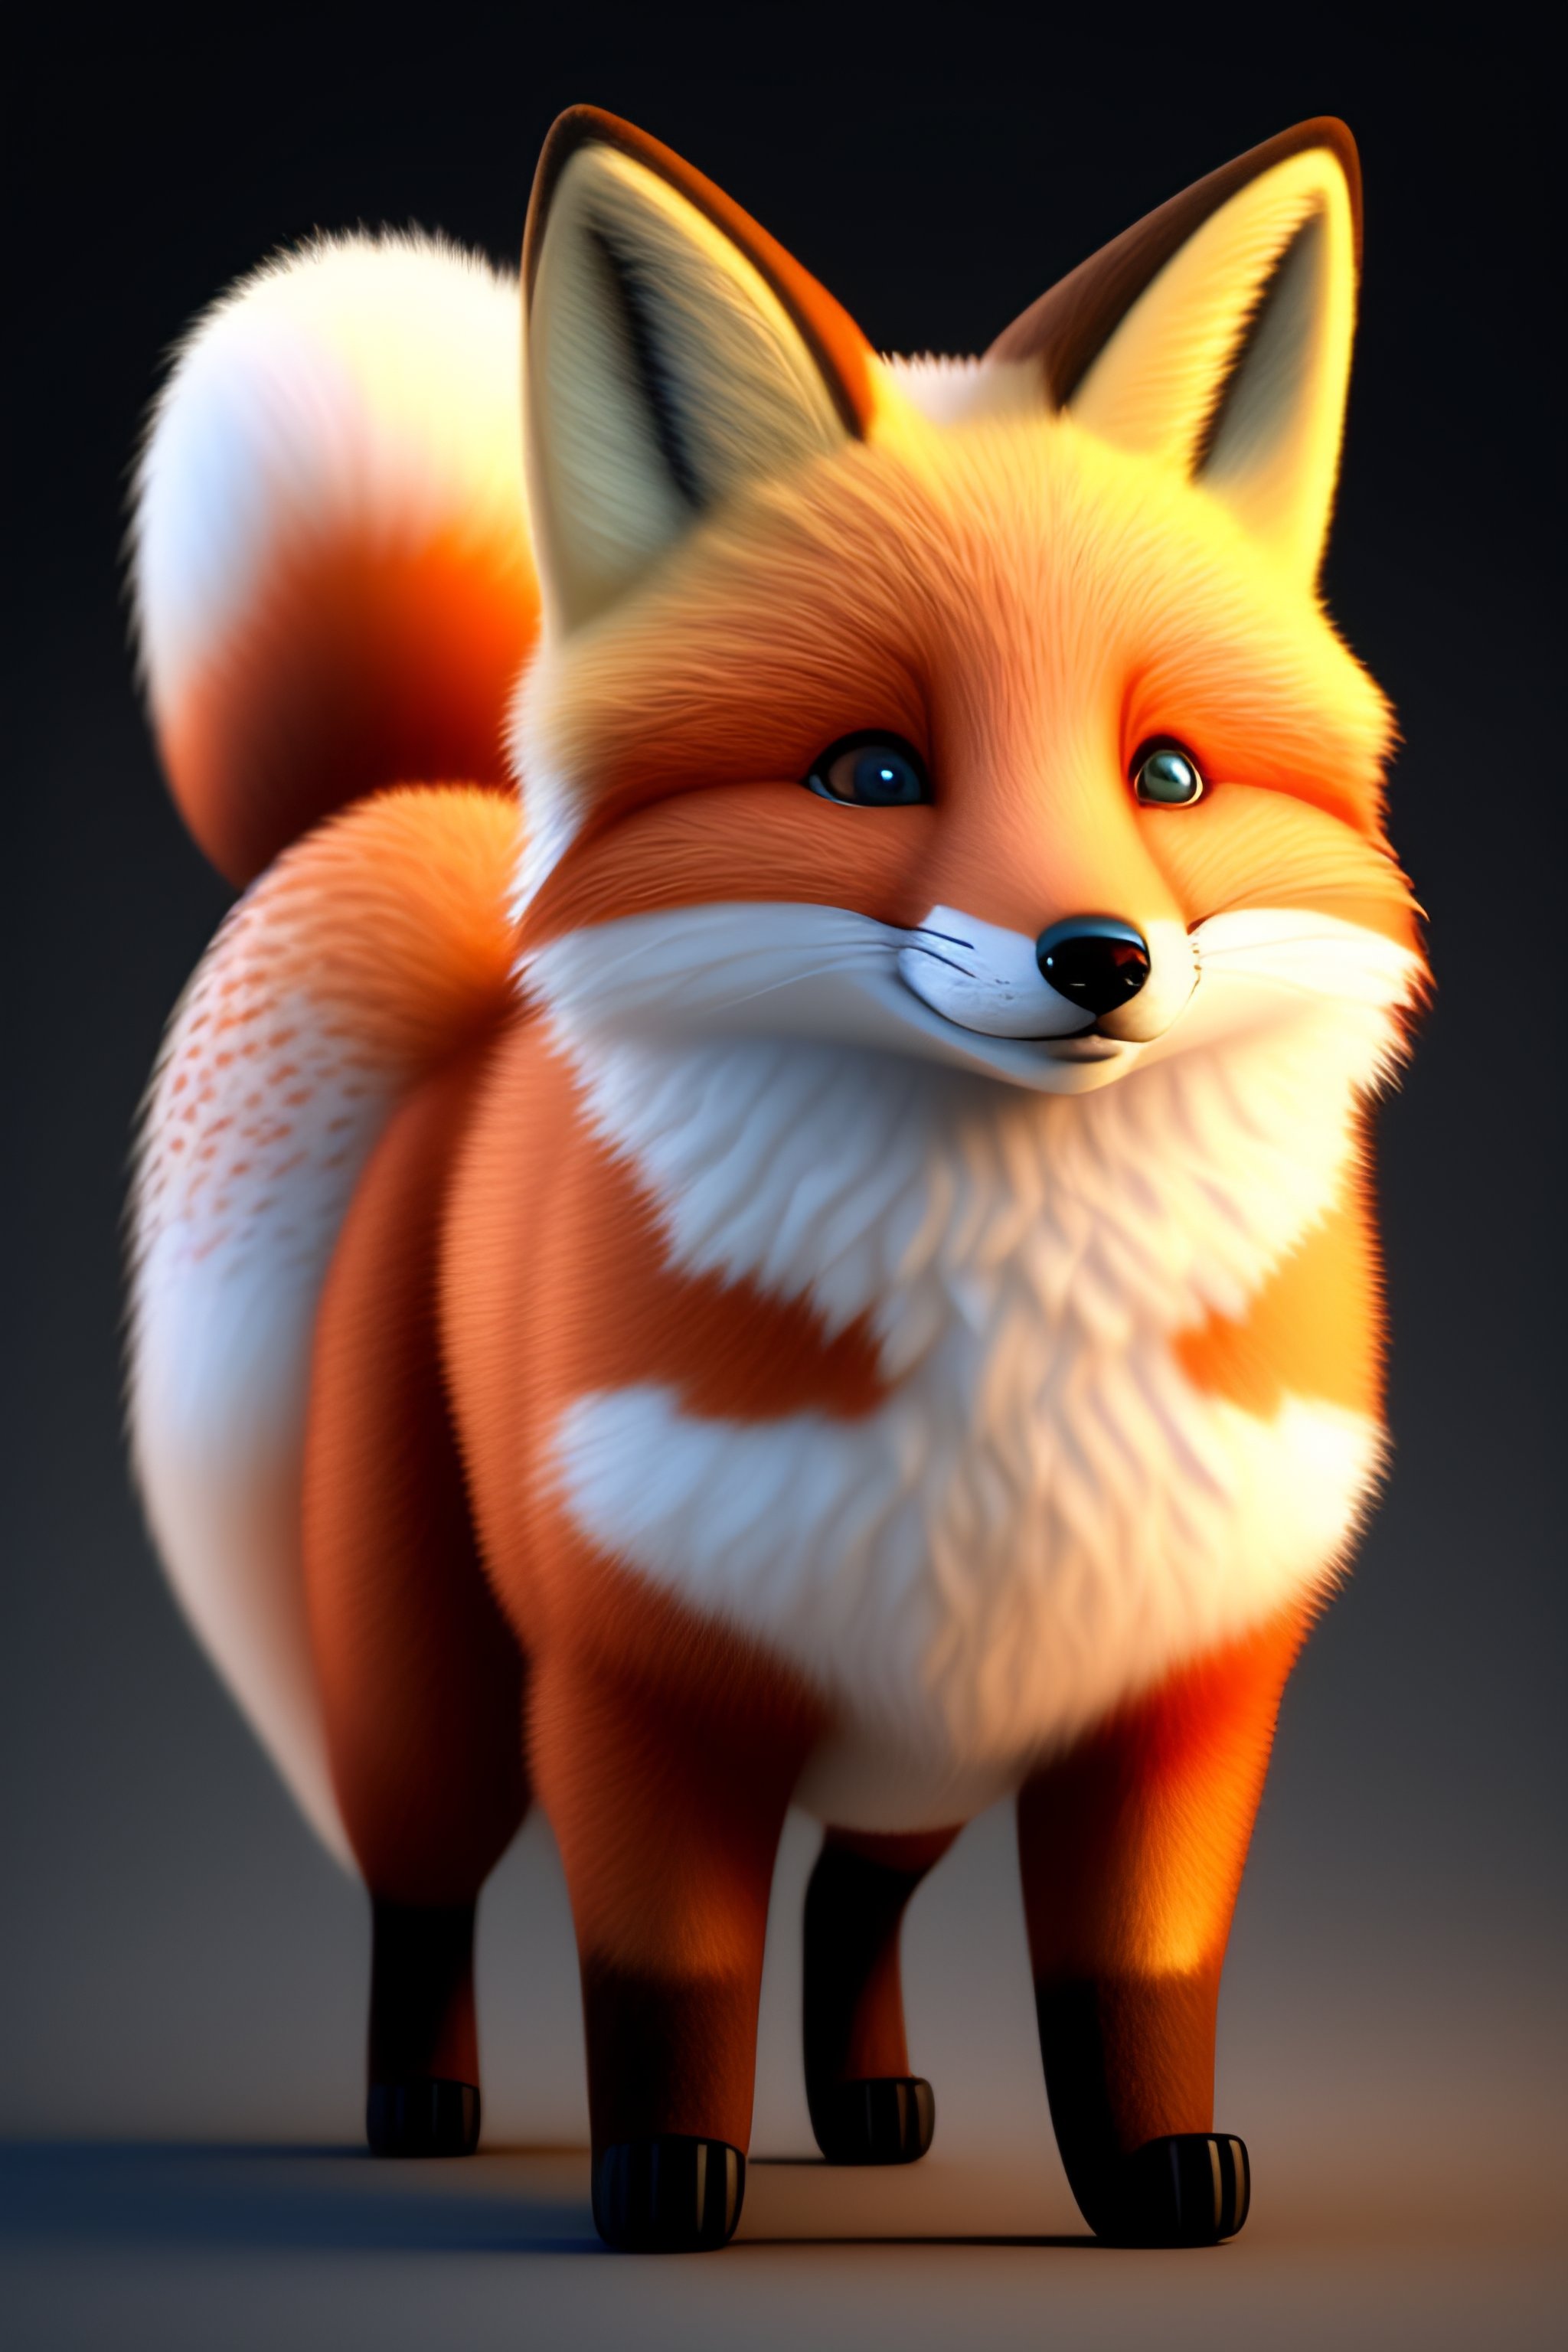 cute cartoon fox with big eyes